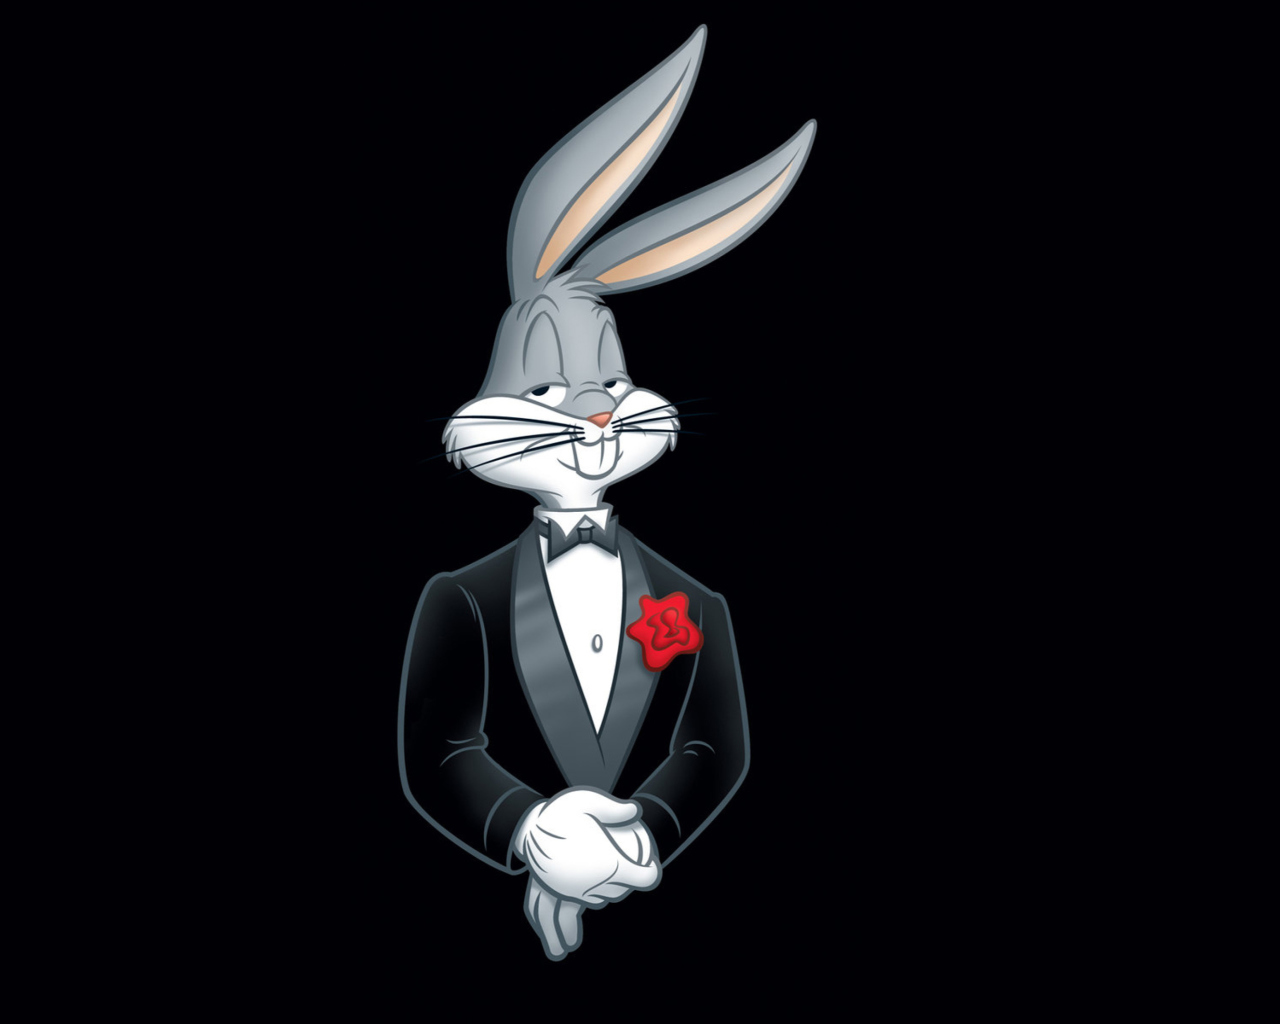 Das Bugs Bunny Wallpaper 1280x1024